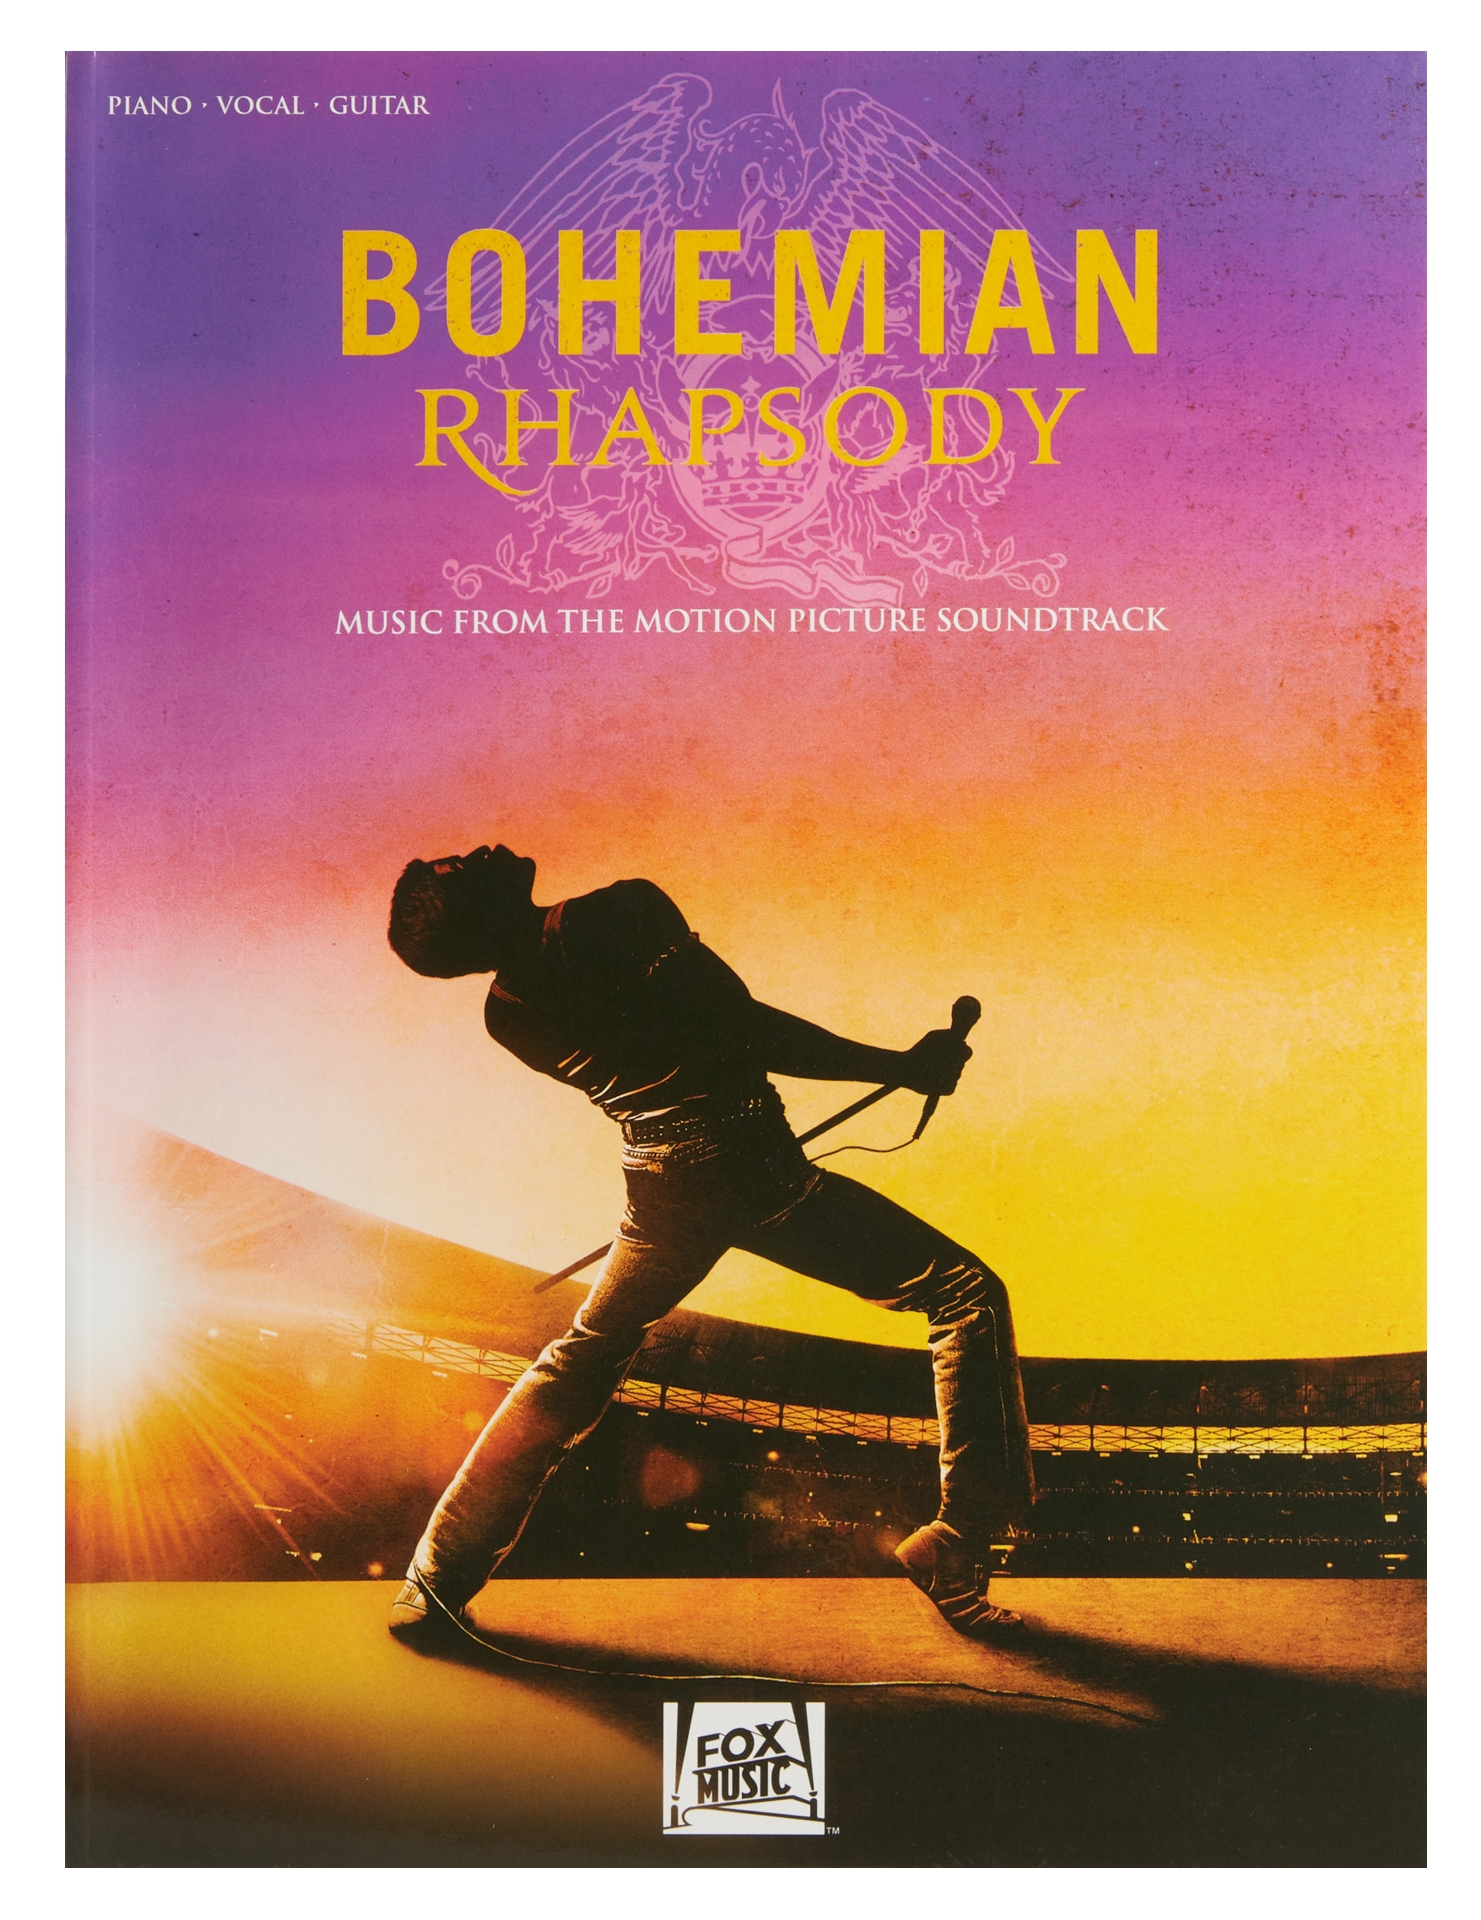 MS Bohemian Rhapsody